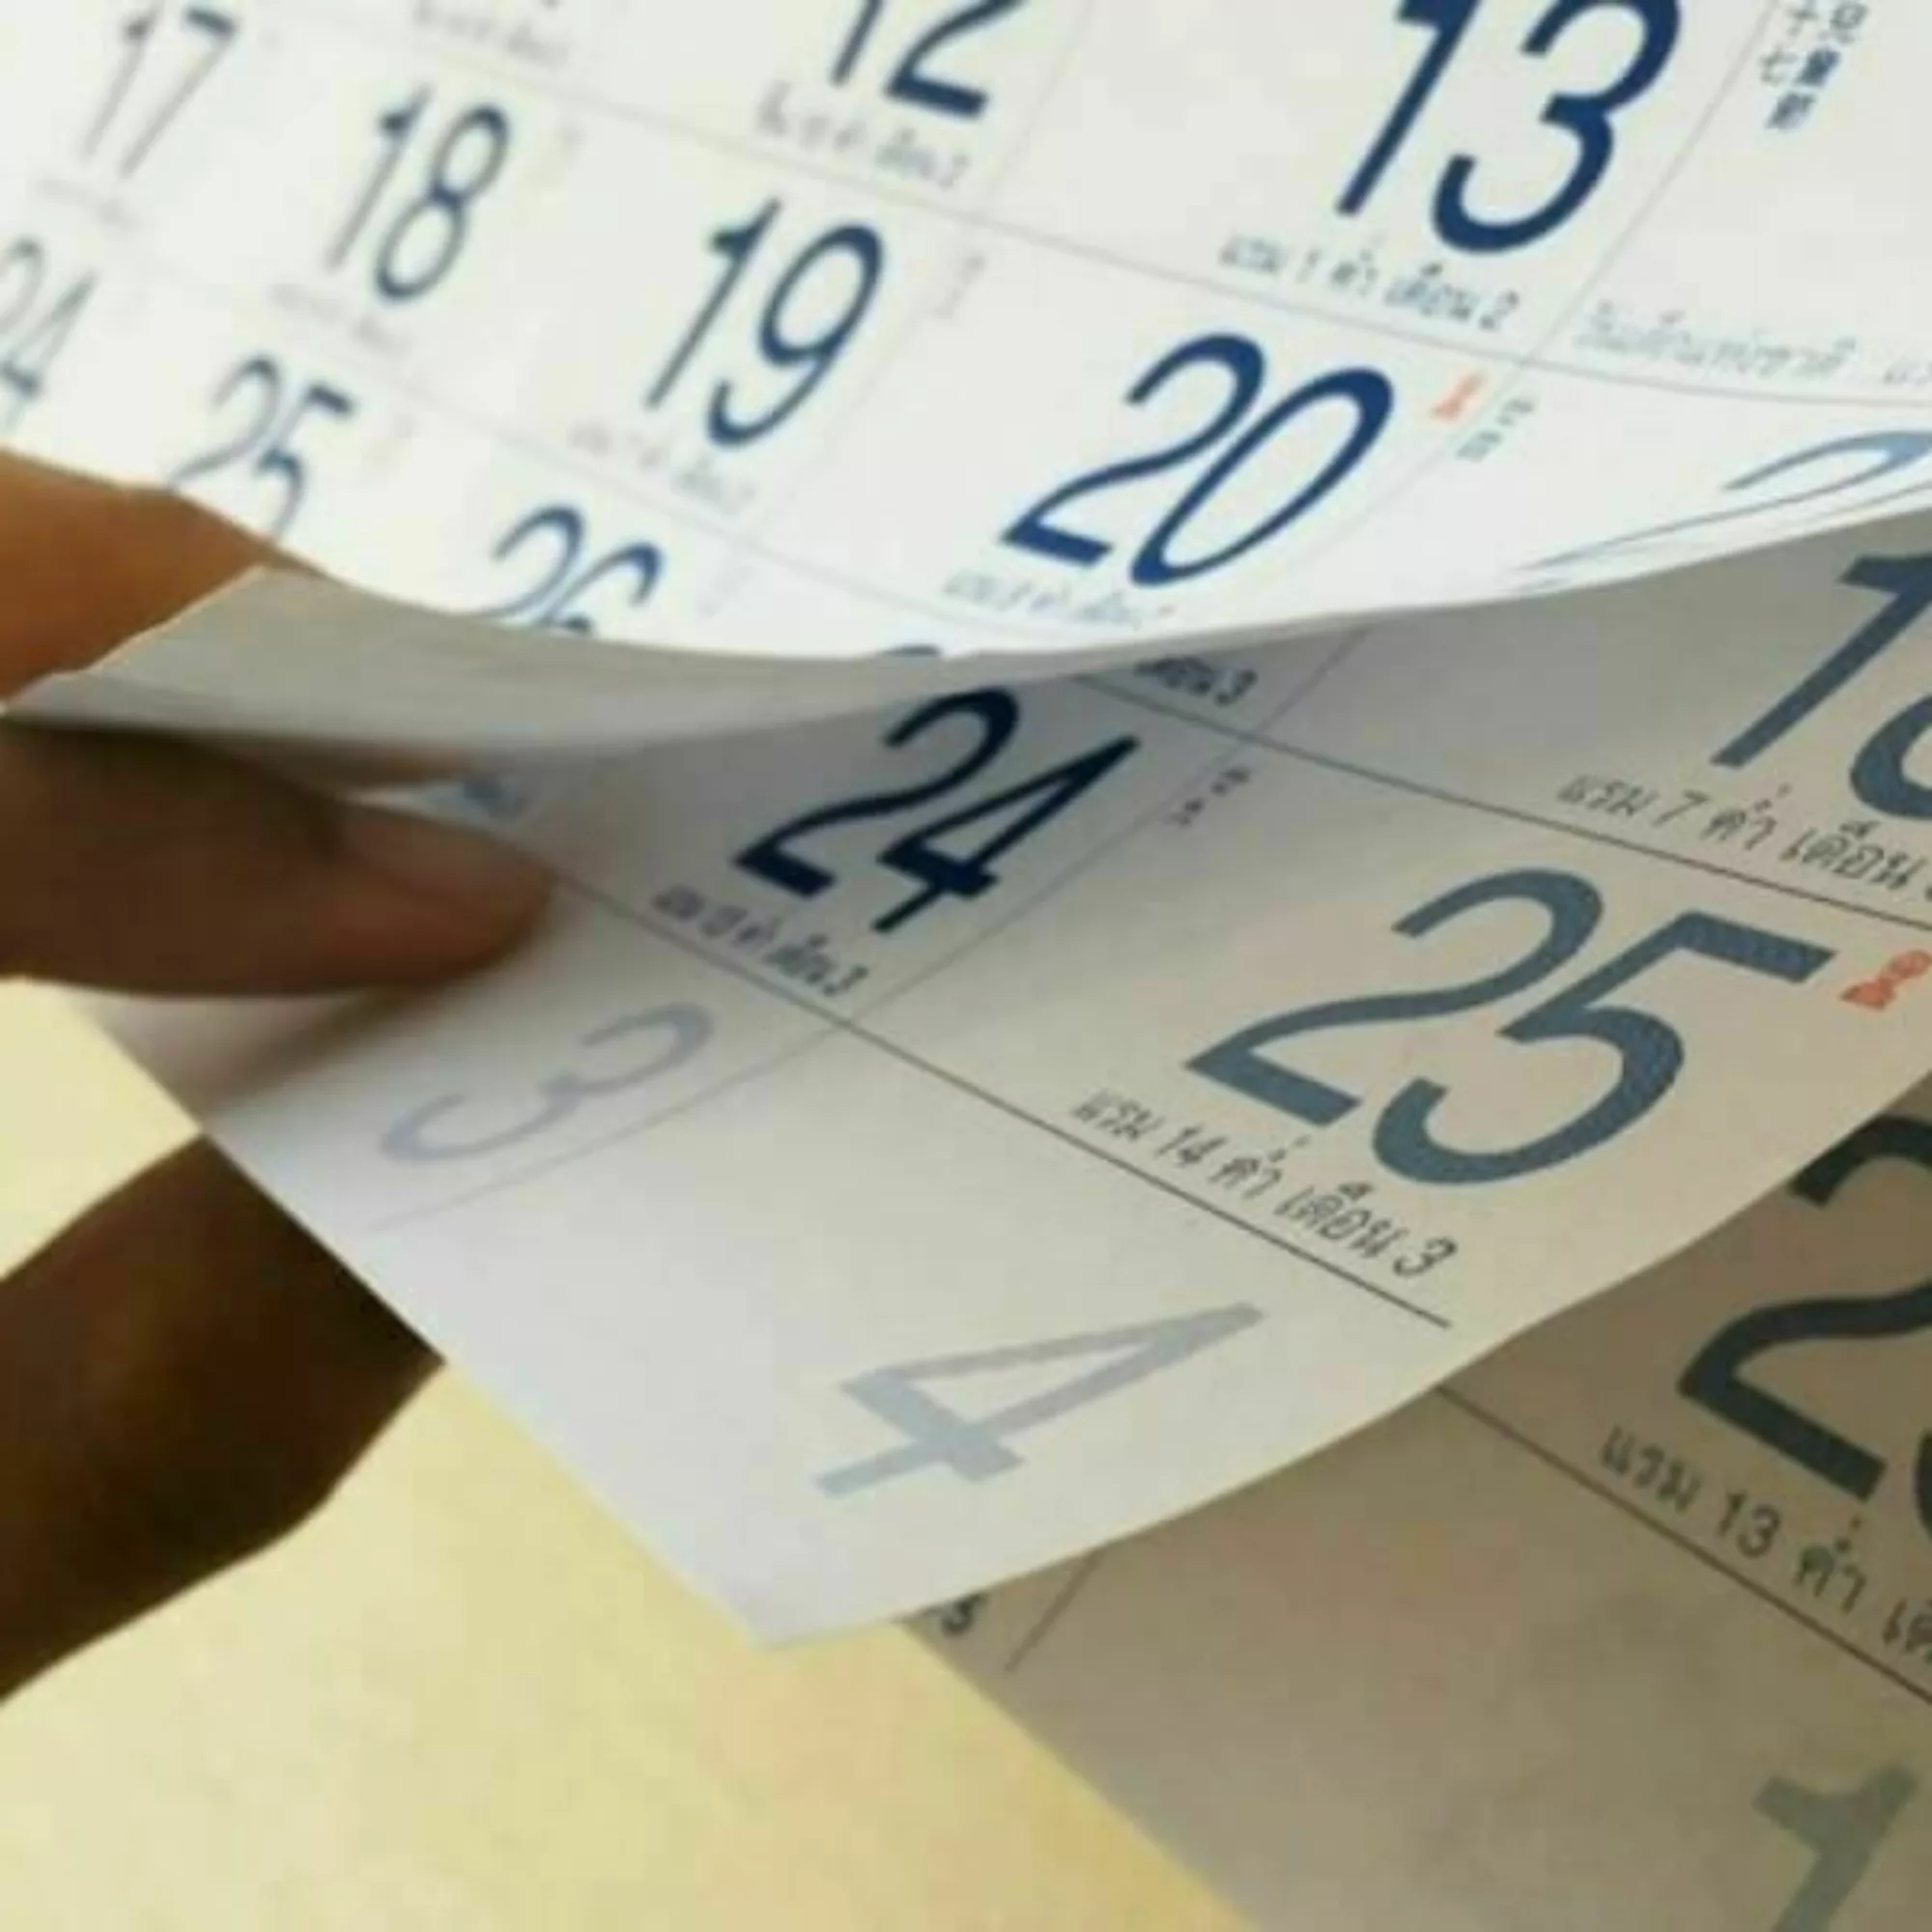 Hand flipping through a calendar.